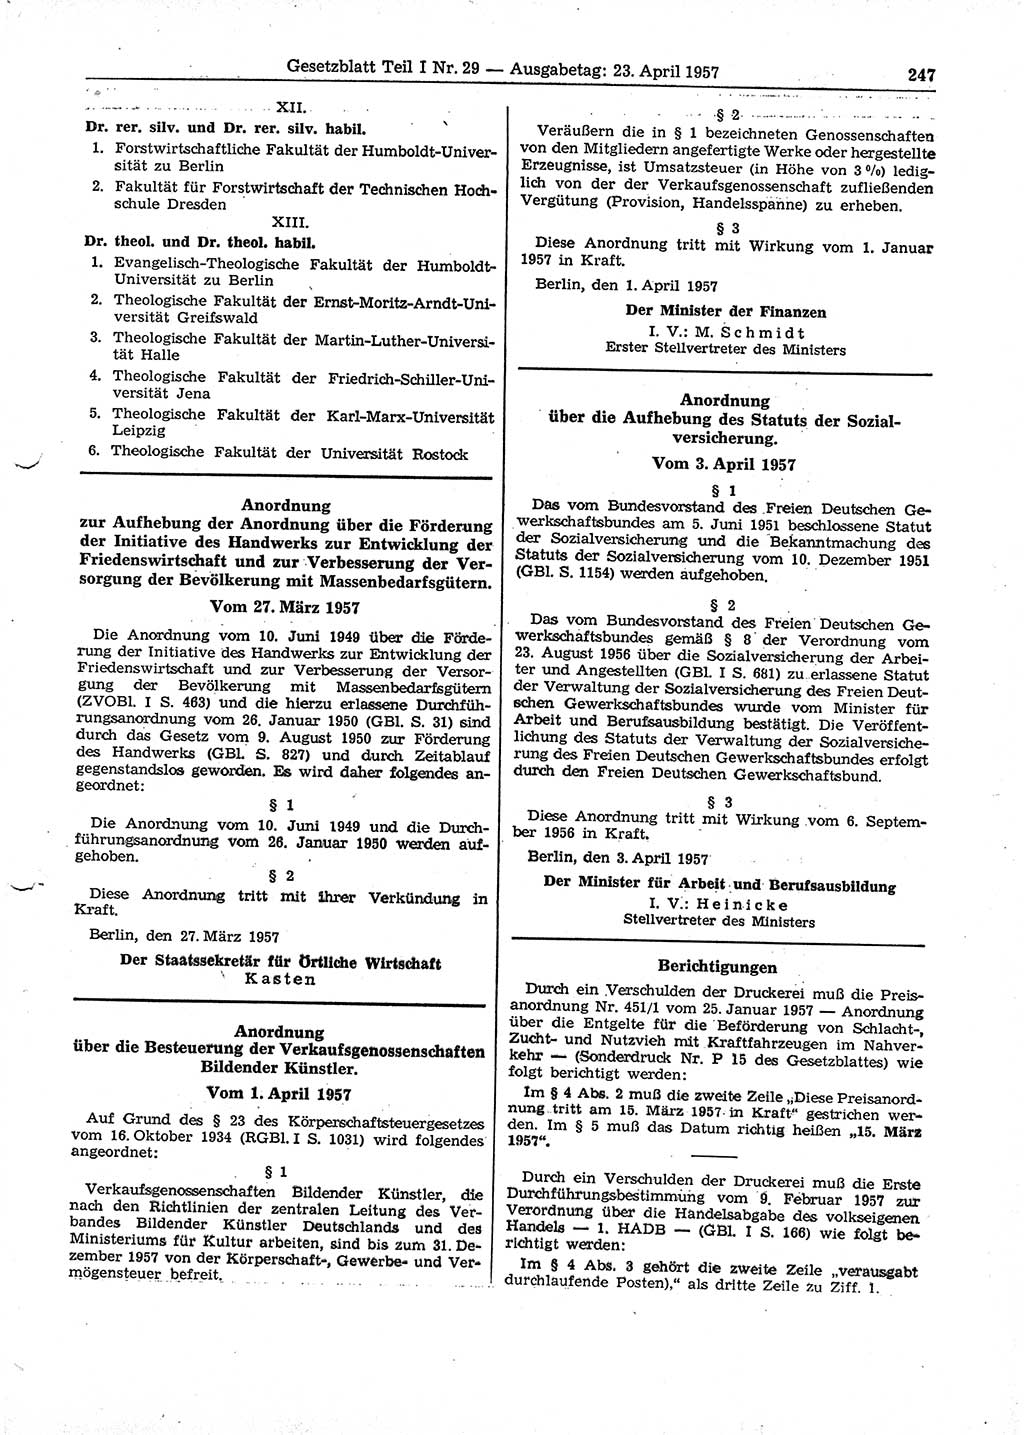 Gesetzblatt (GBl.) der Deutschen Demokratischen Republik (DDR) Teil Ⅰ 1957, Seite 247 (GBl. DDR Ⅰ 1957, S. 247)